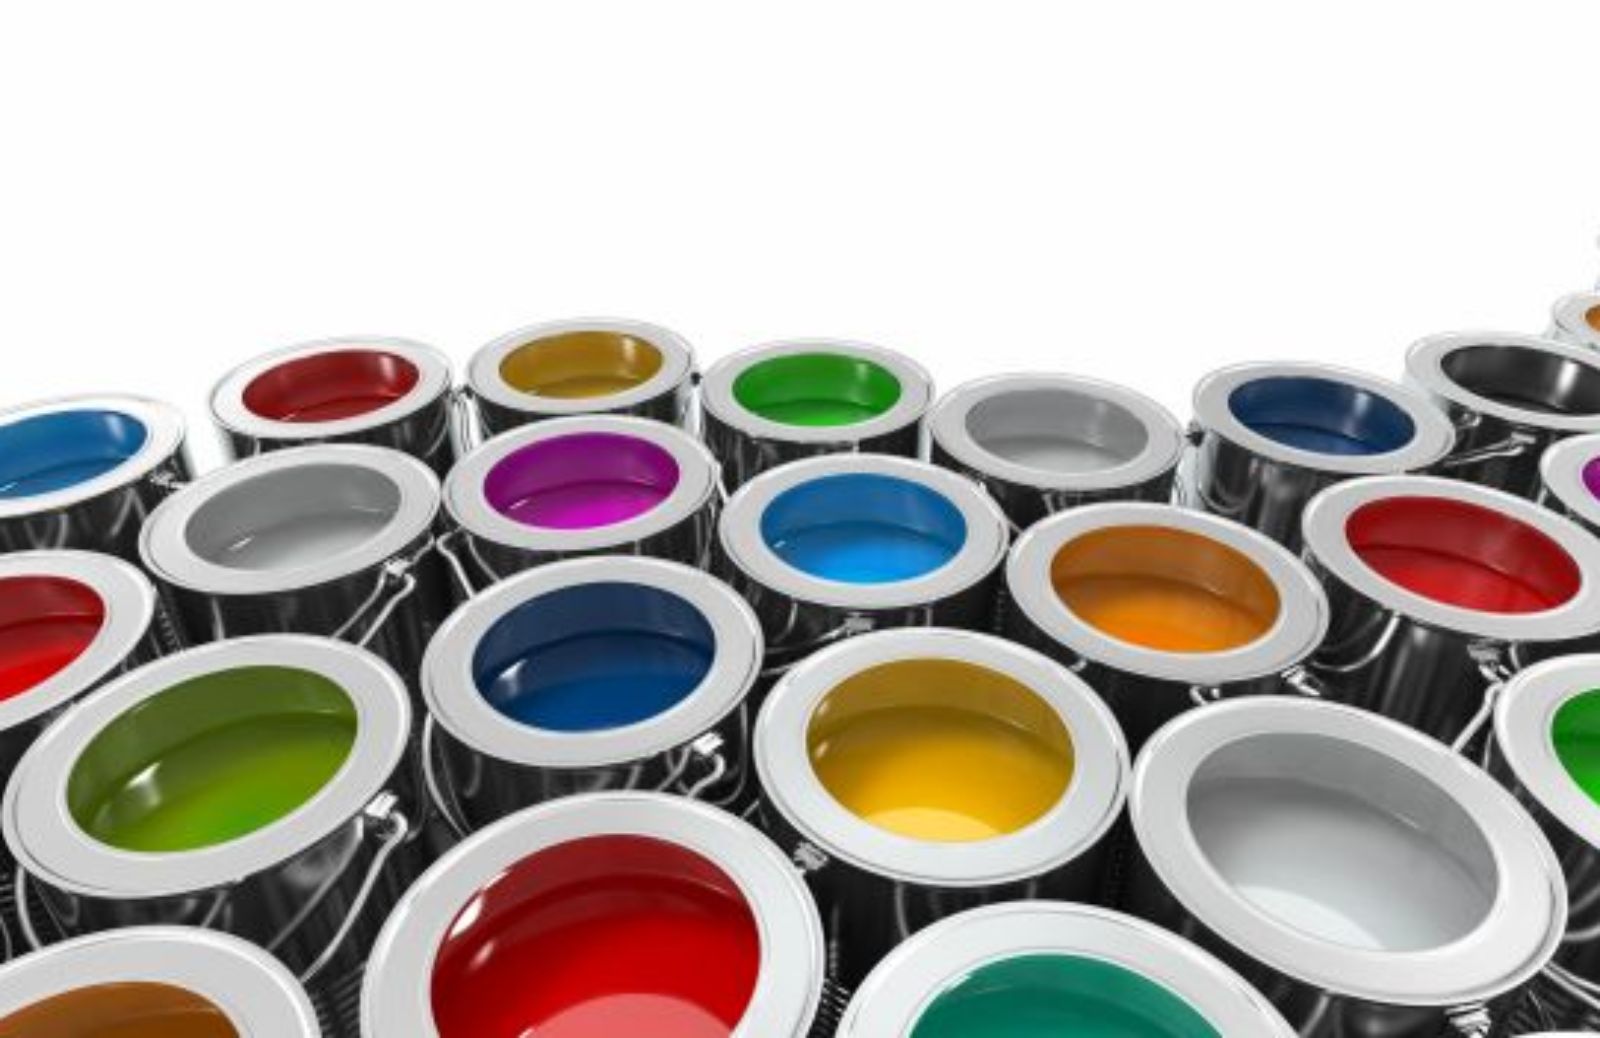 Come mescolare insieme i colori per ottenere sfumature cromatiche diverse